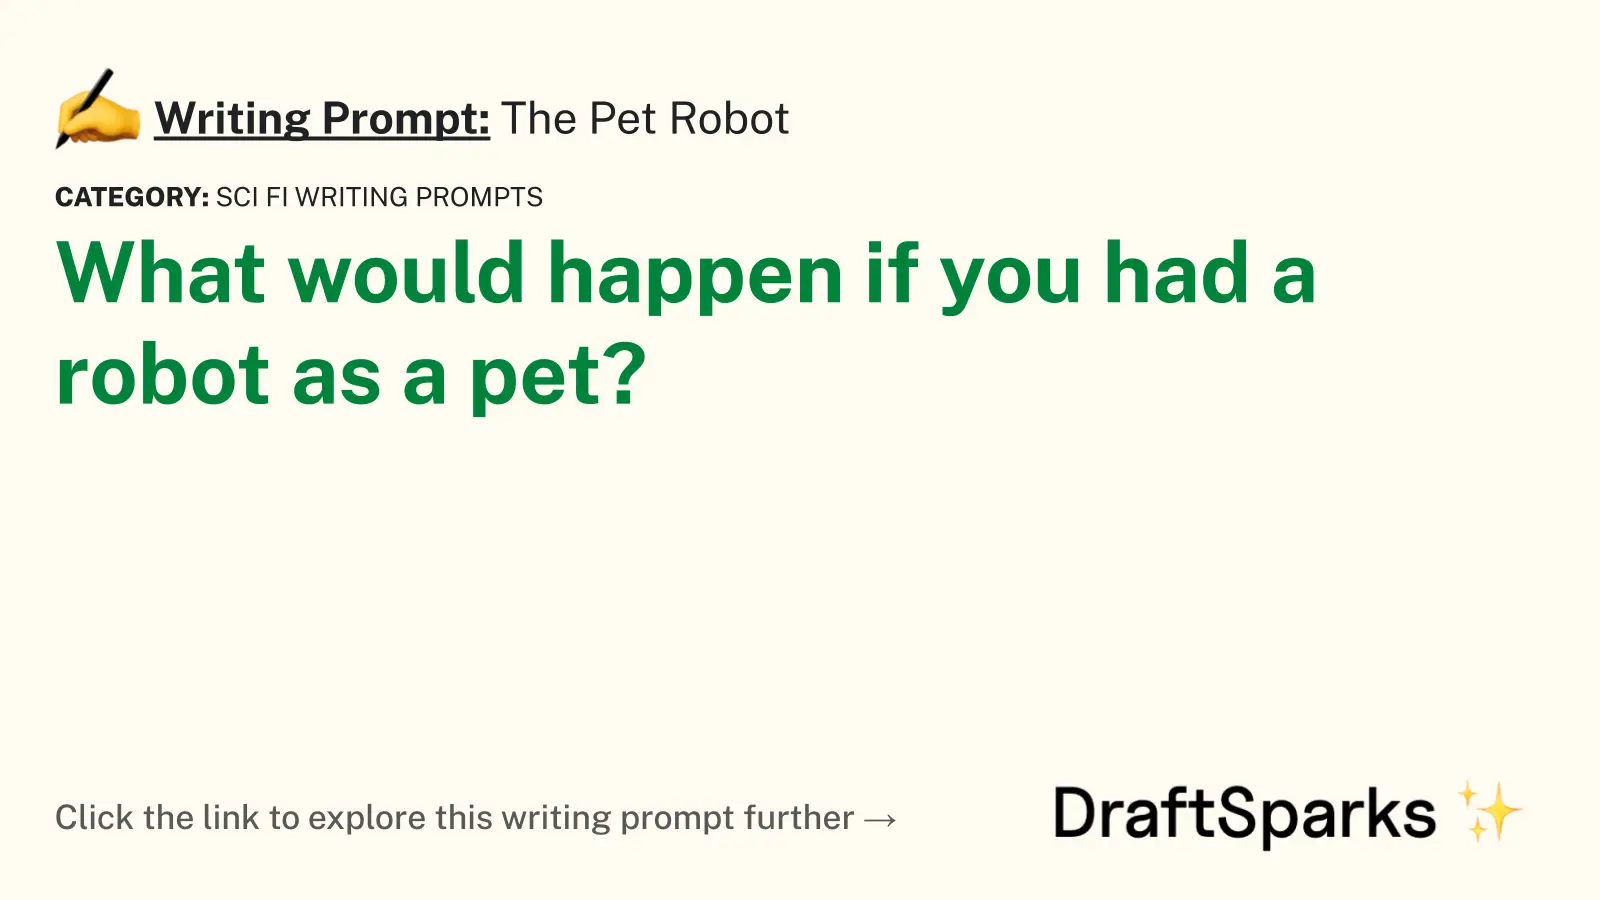 The Pet Robot